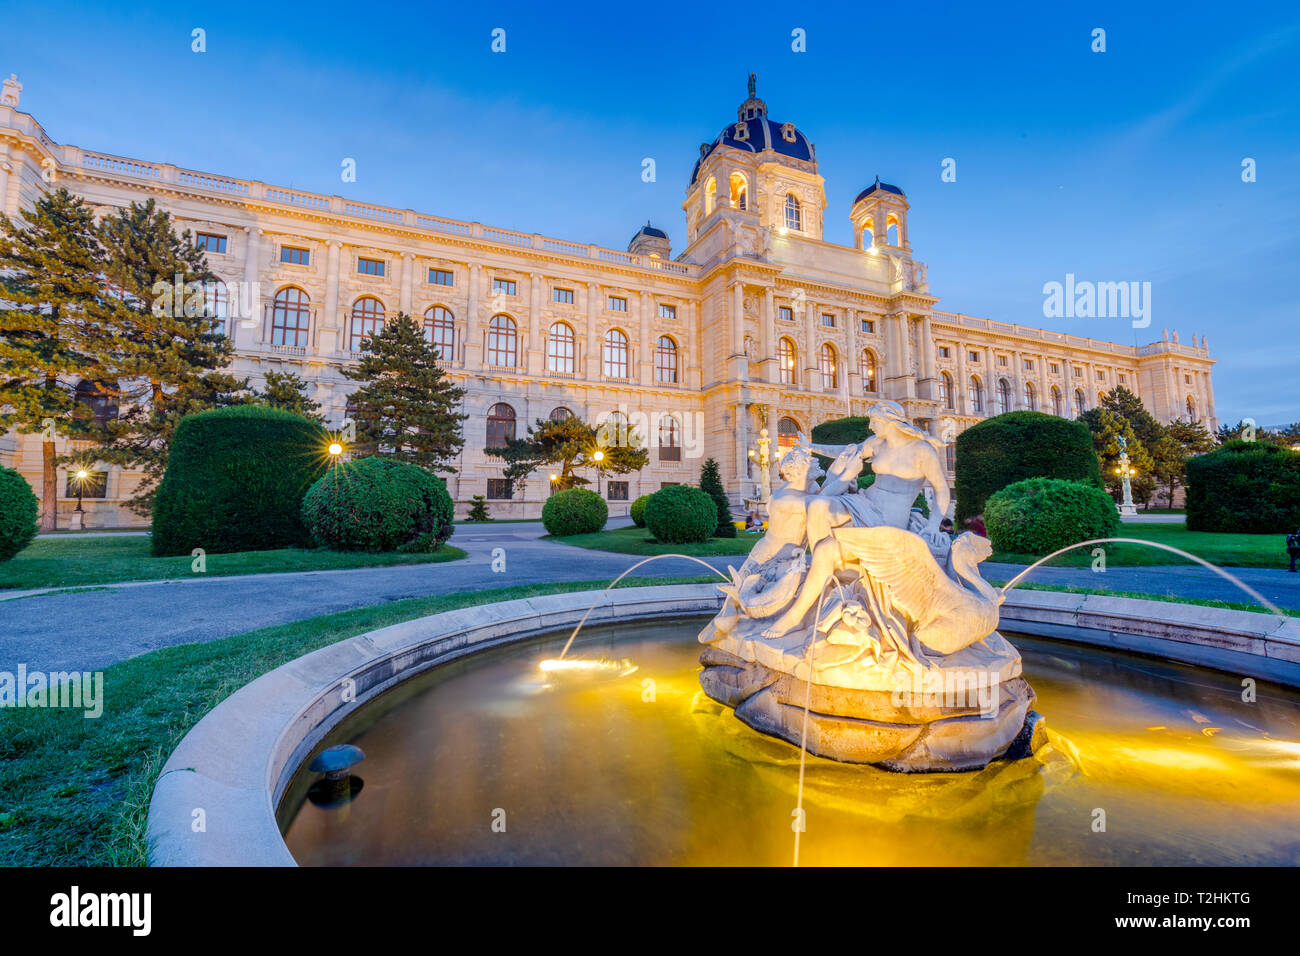 Le Kunsthistorisches Museum (Histoire de l'Art) et une fontaine au crépuscule, Vienne, Autriche, Europe Banque D'Images